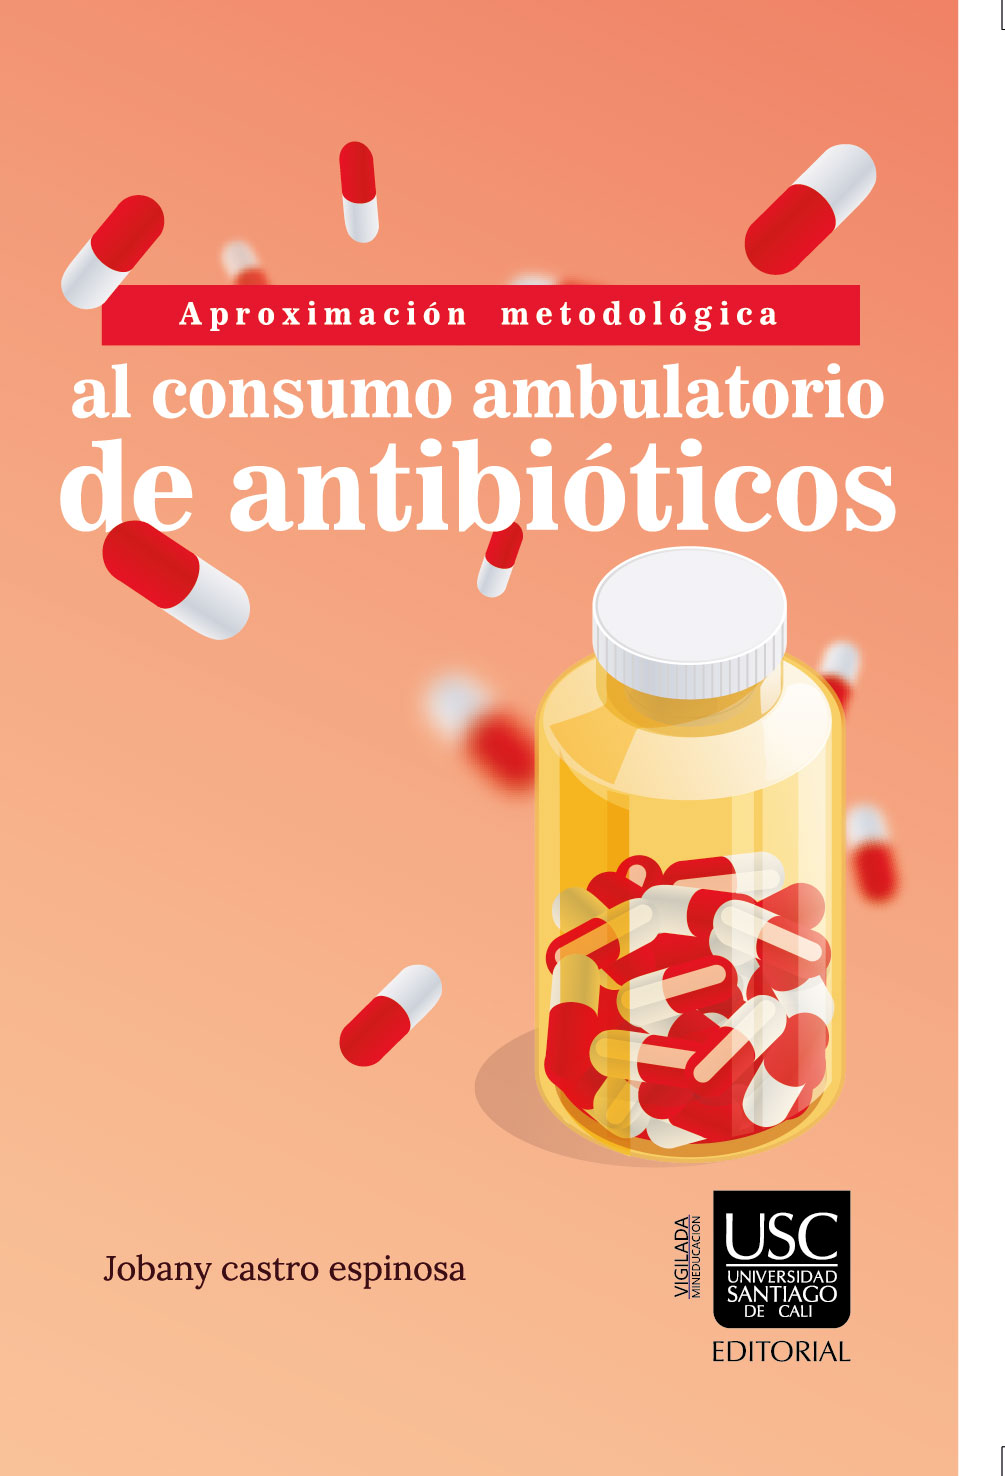 Imagen de portada del libro Aproximación metodológica al consumo ambulatorio de antibióticos